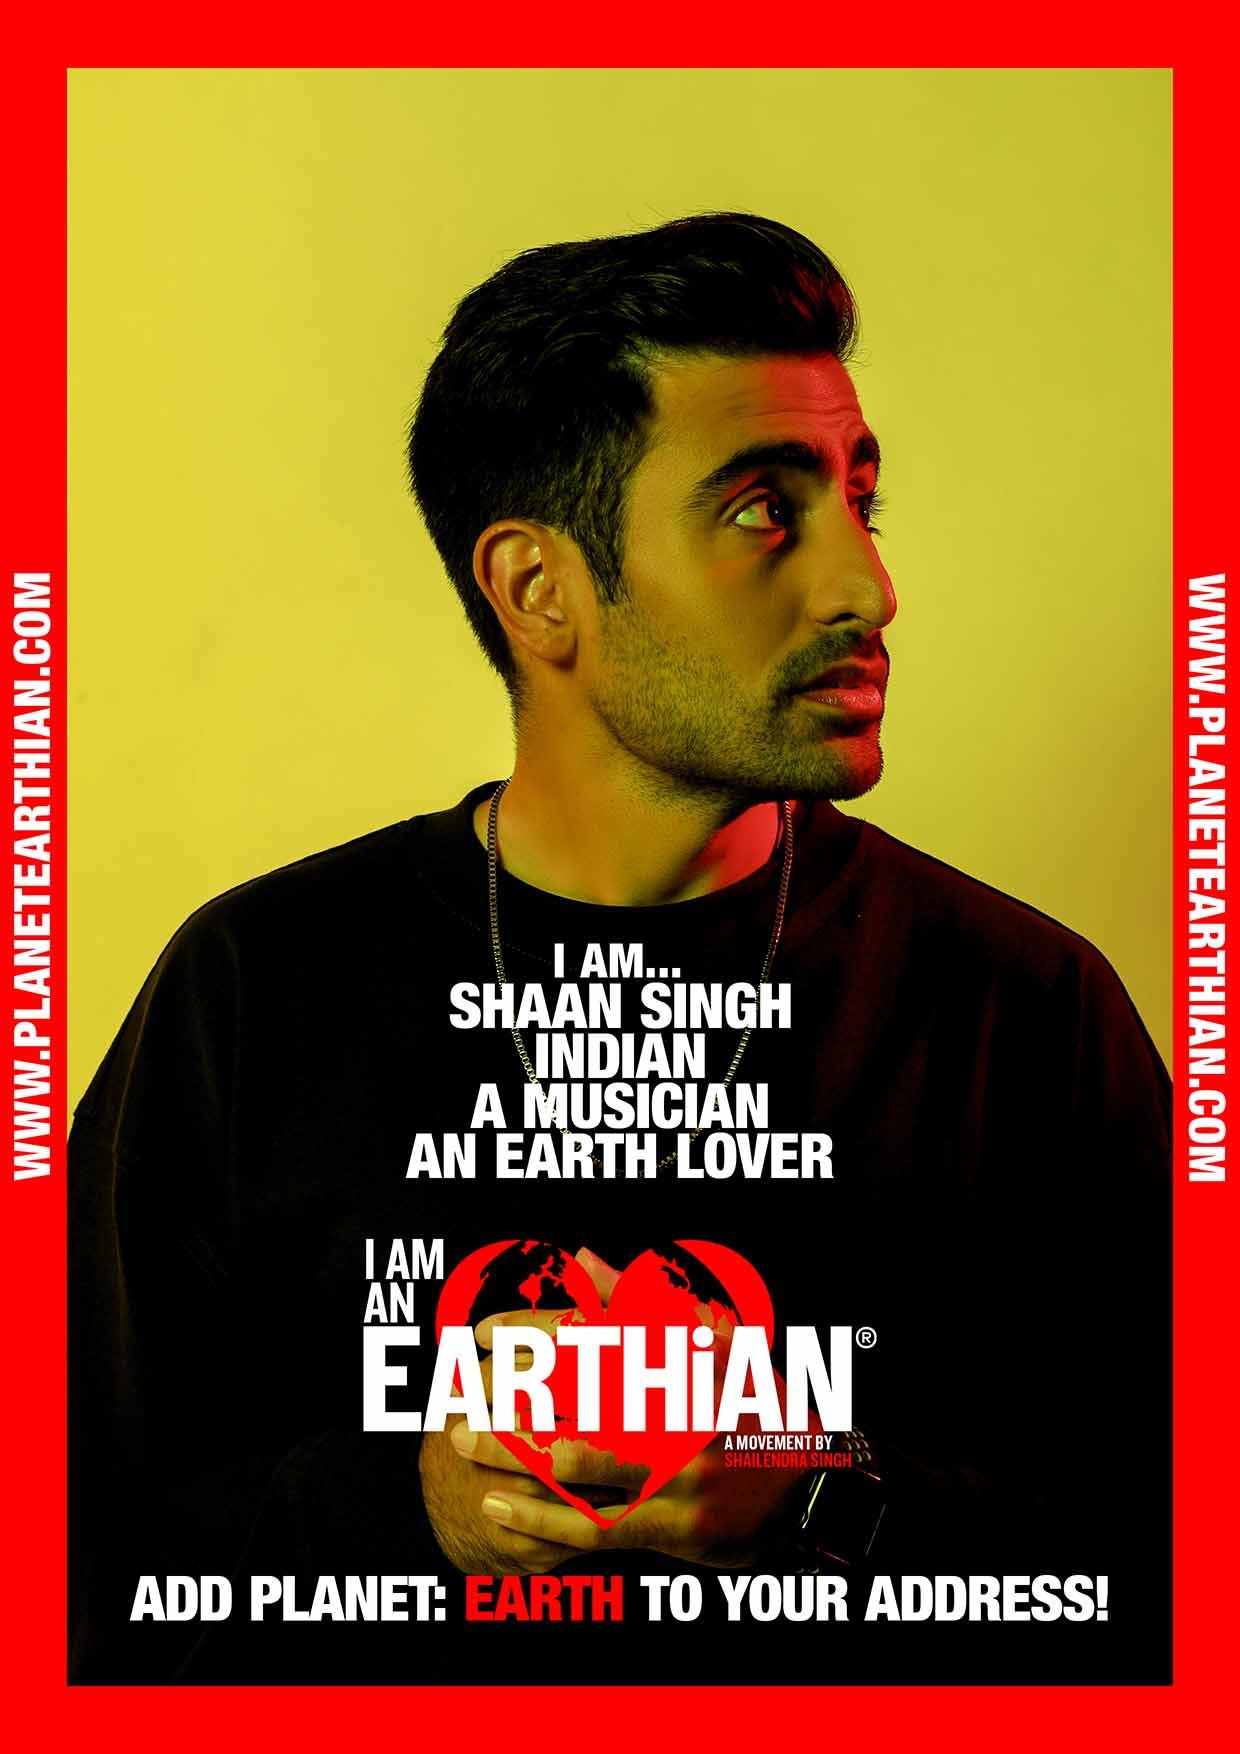 Shaan Singh Earthian